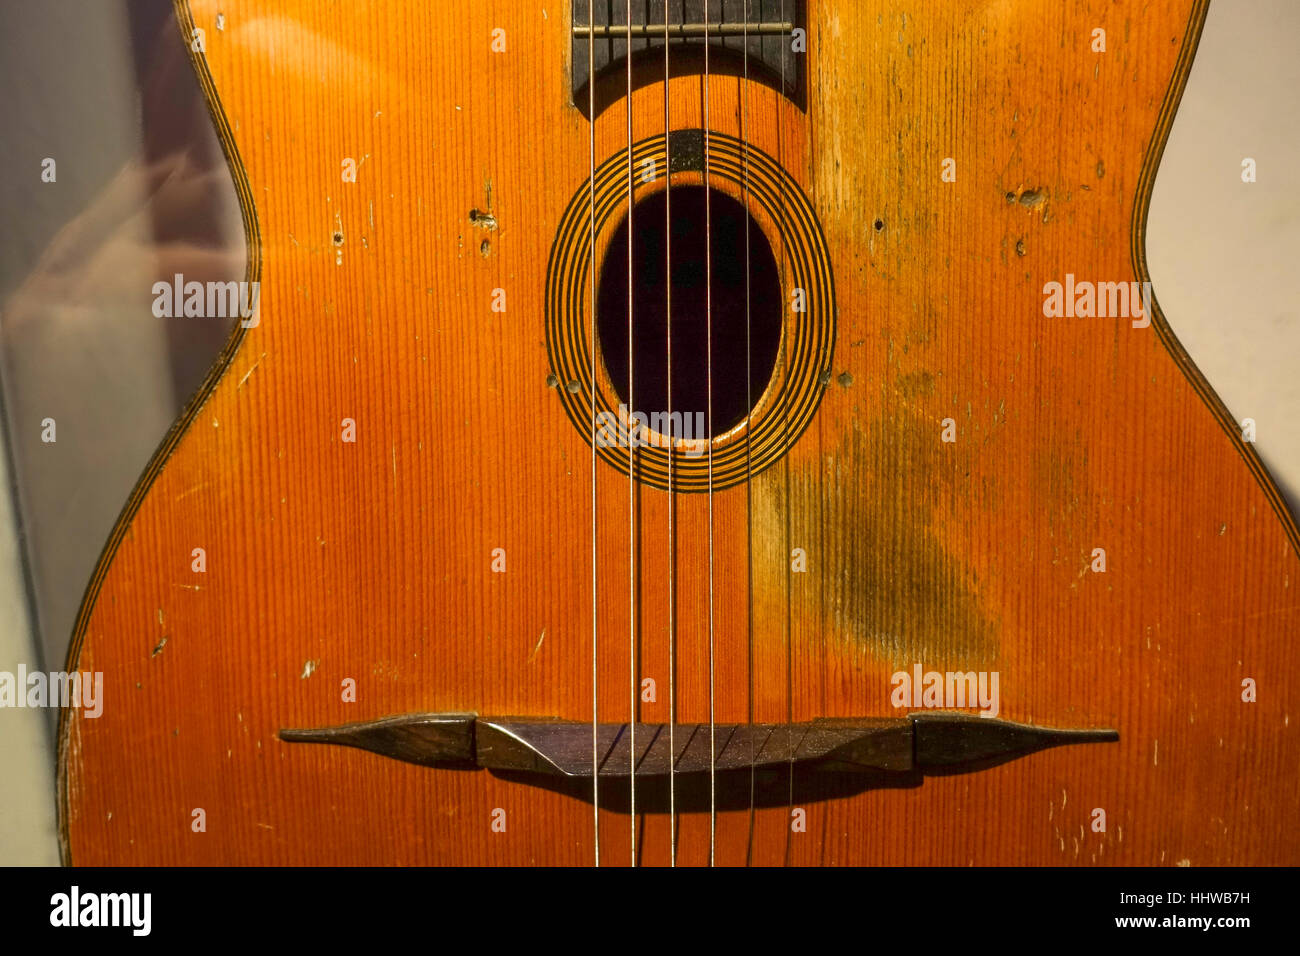 Détail de la guitare de Django Reinhardt affichée à musée de la musique, Cité de la musique, Paris, France. Banque D'Images